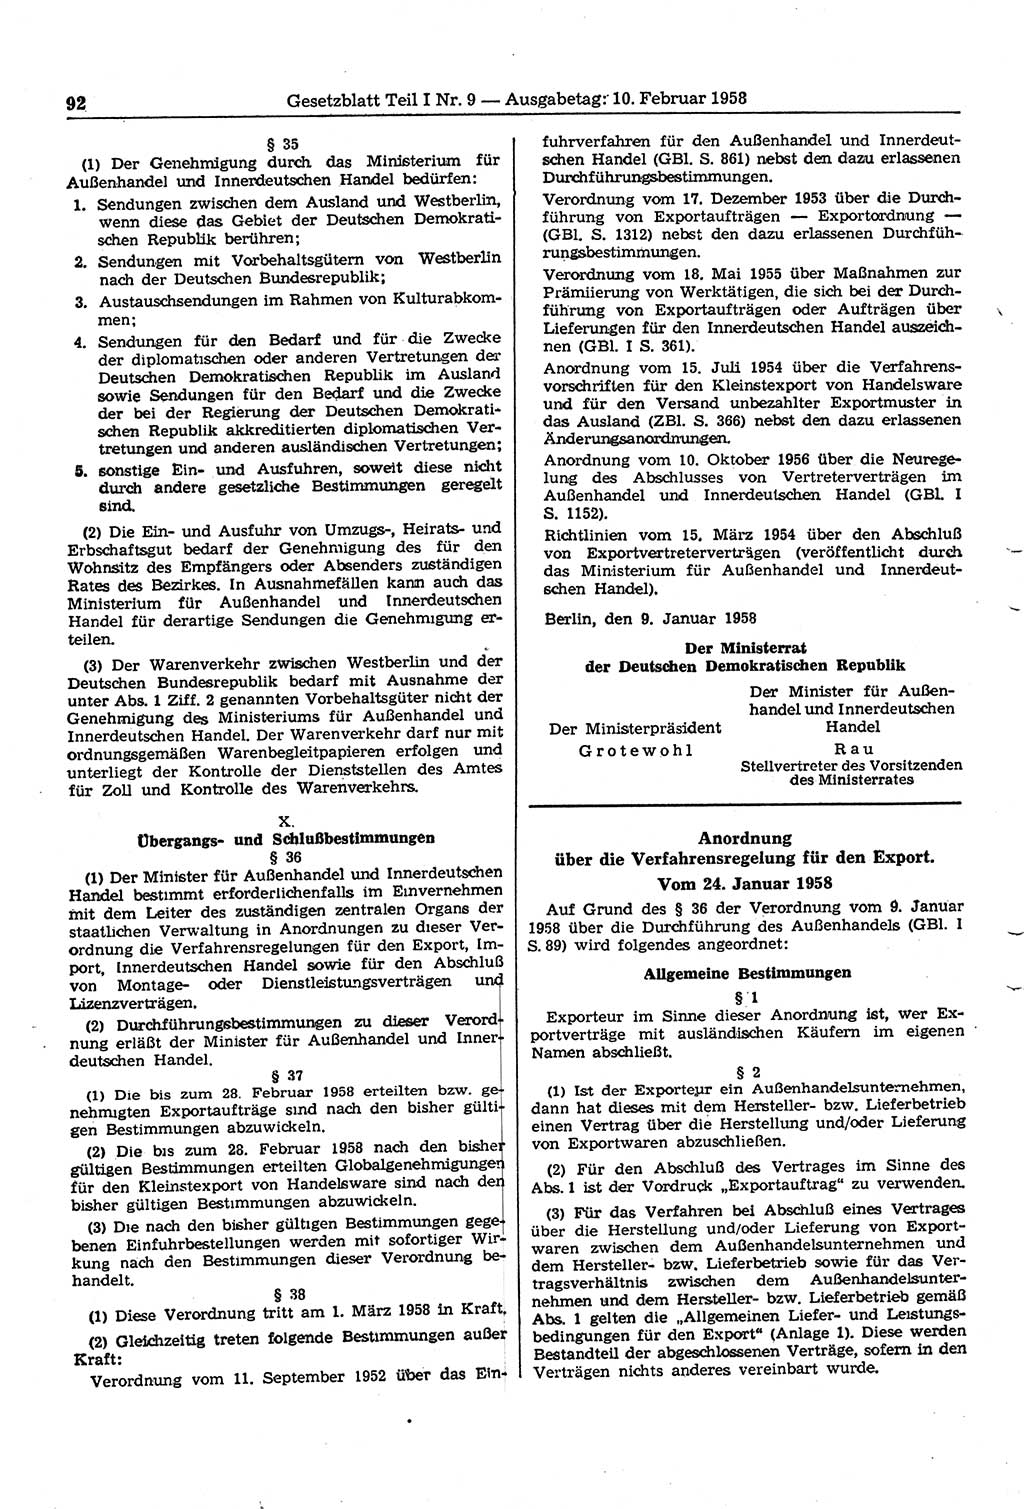 Gesetzblatt (GBl.) der Deutschen Demokratischen Republik (DDR) Teil Ⅰ 1958, Seite 92 (GBl. DDR Ⅰ 1958, S. 92)